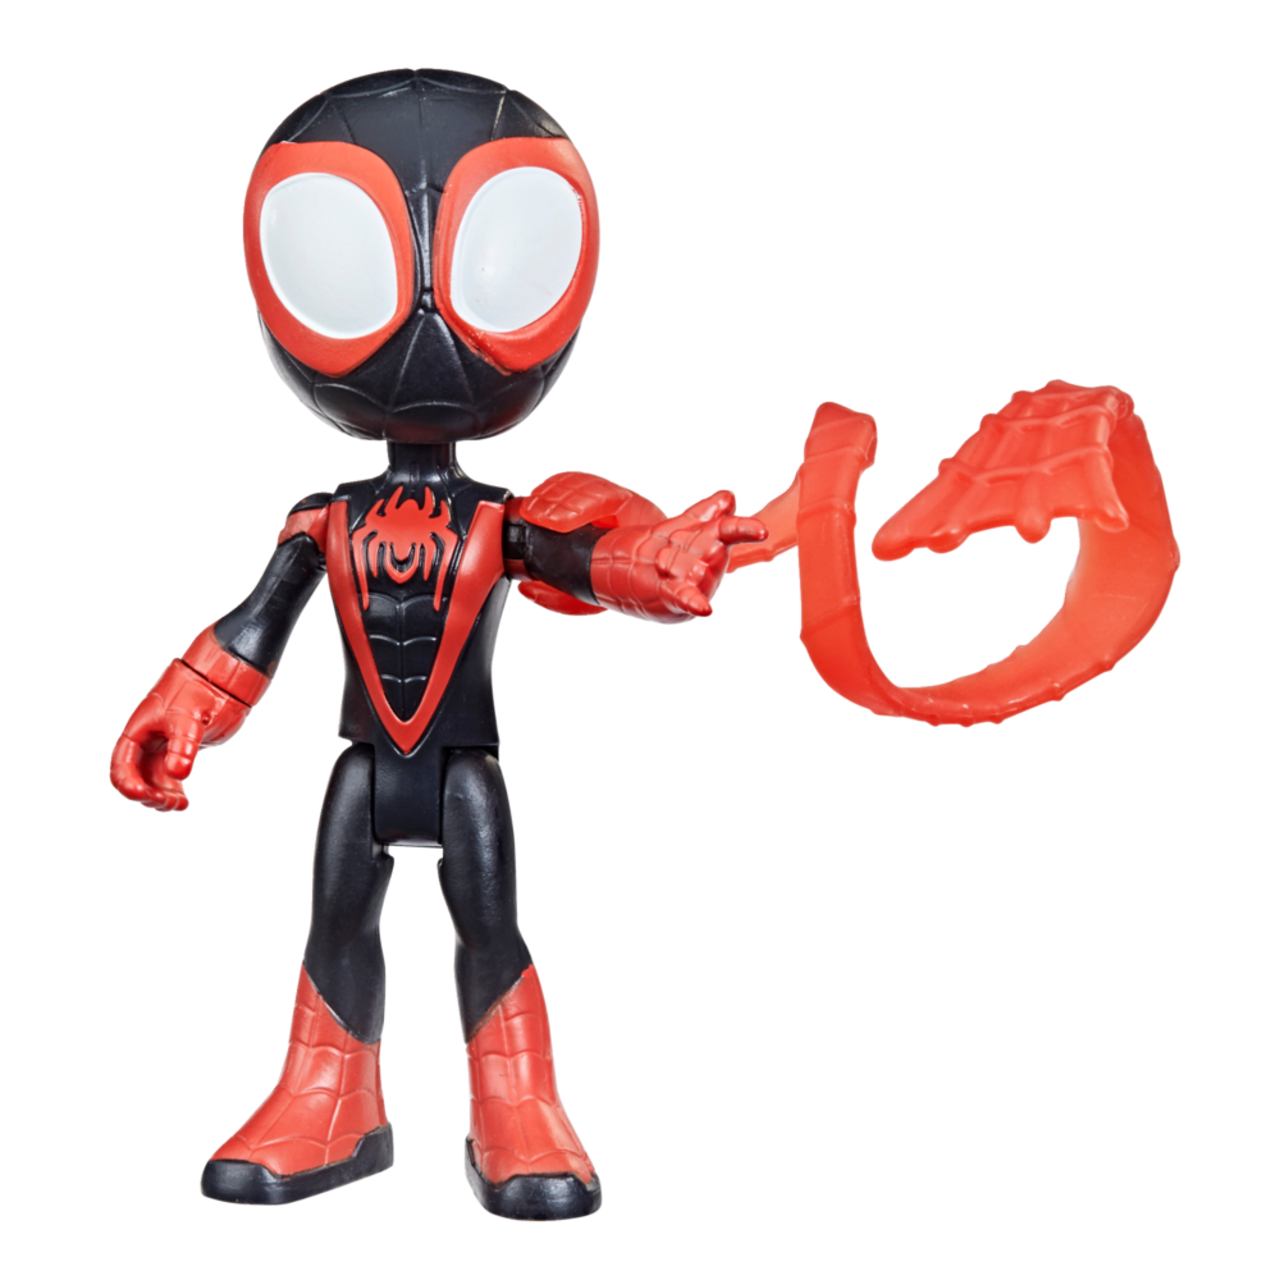 Figurines articulées héros Spider-Man de Spider-Man et ses amis Marvel  Playskool, choix variées, 4 po, 3 ans et plus